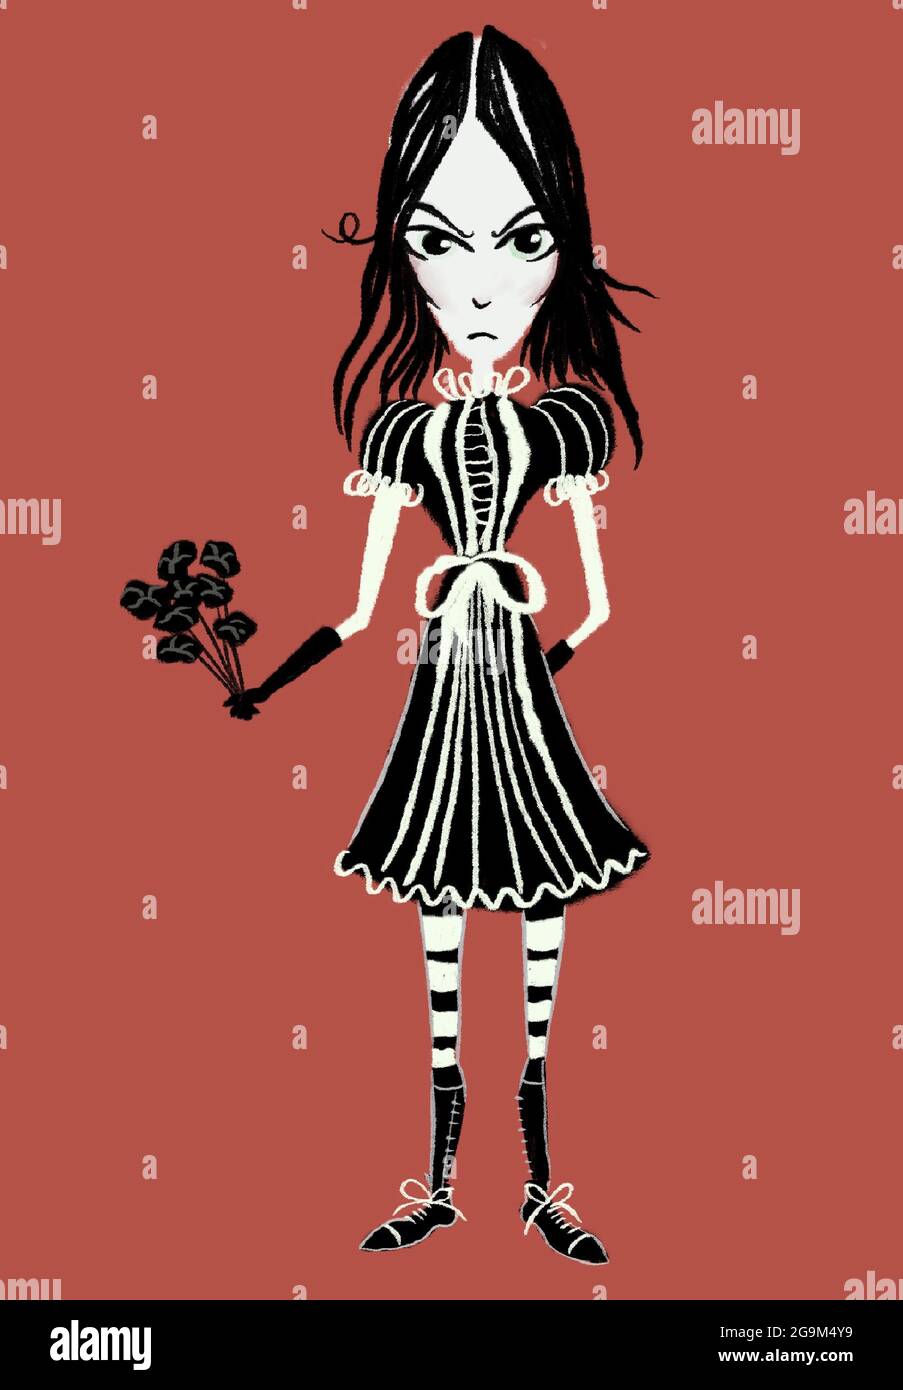 Ilustración dibujada a mano de la muchacha de la goth o de la muchacha de Loli Foto de stock